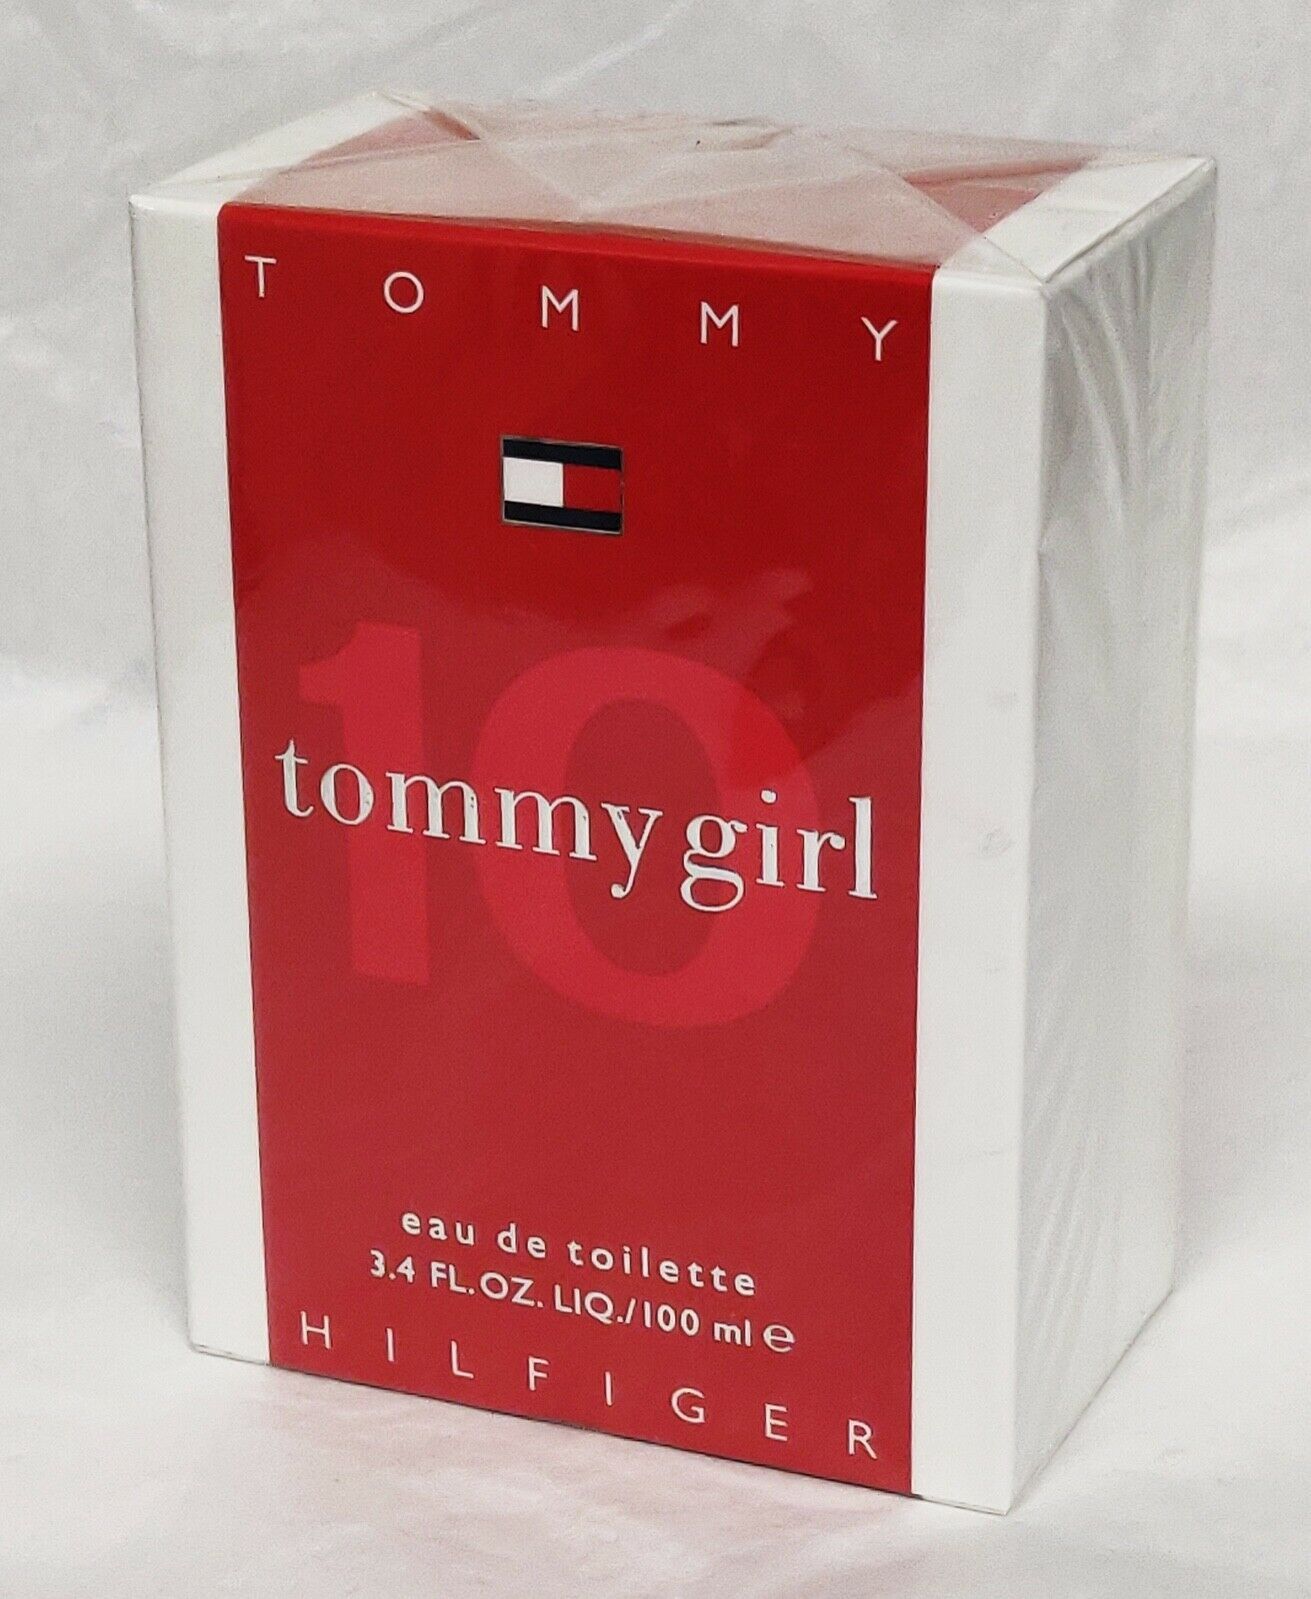 Aaaaaatommy hilfiger tommy girl 10 perfume